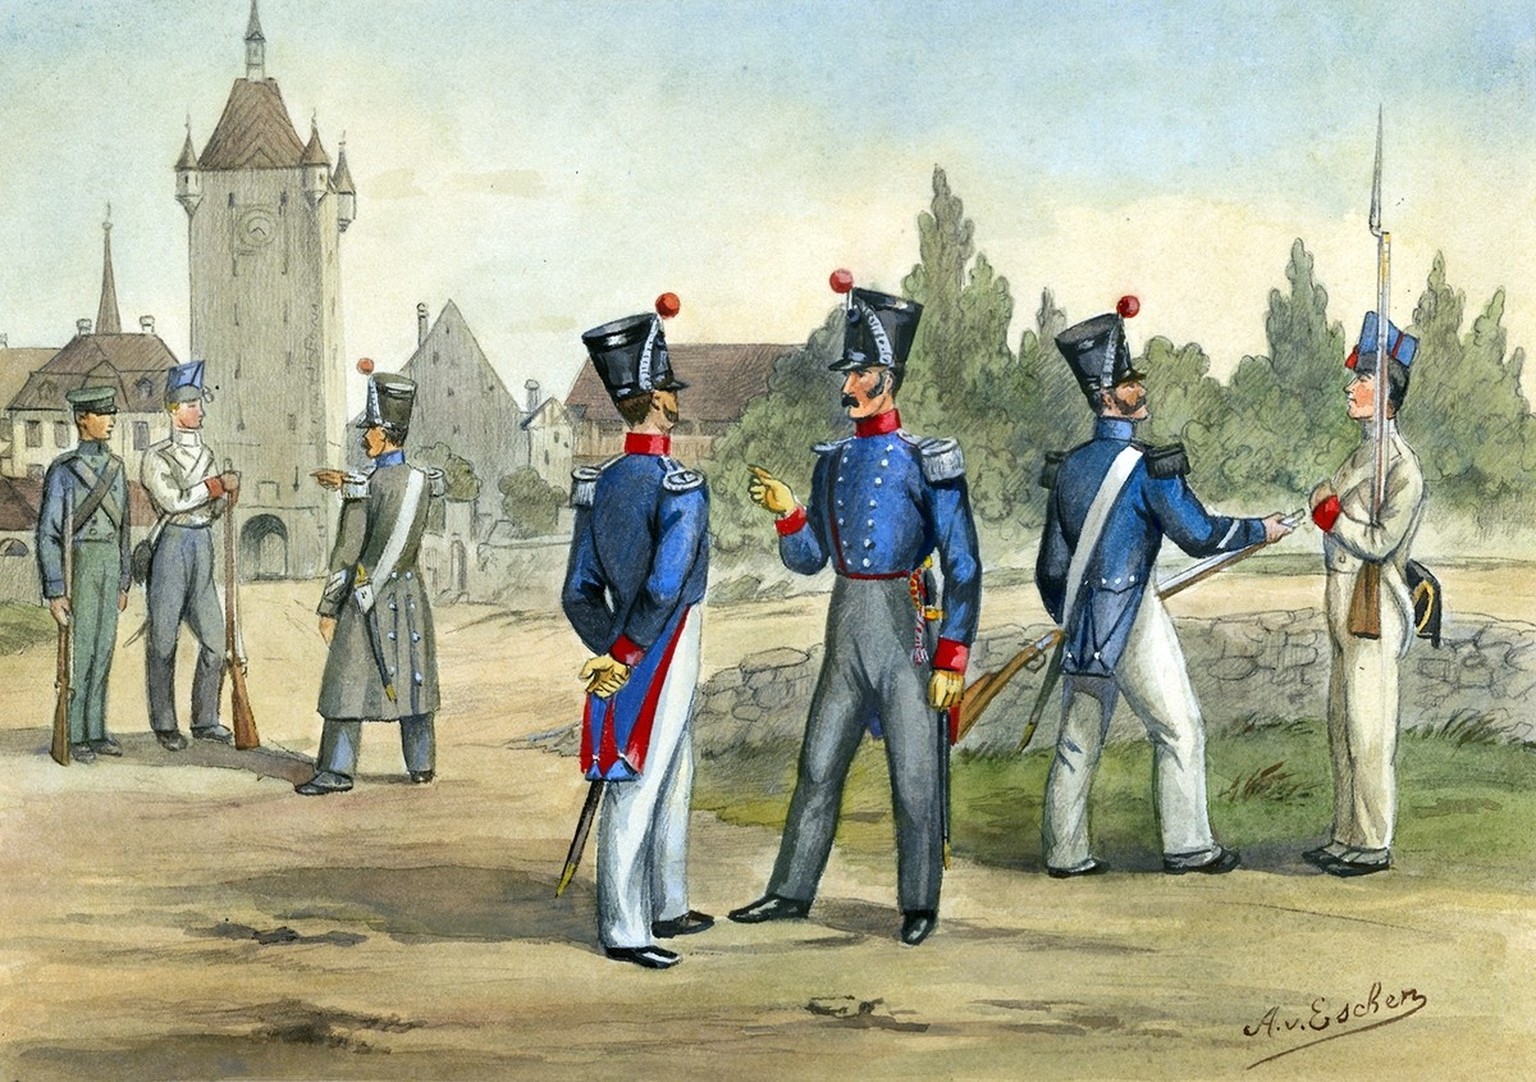 Instruktoren bei der Ausbildung von Infanterie-Rekruten, um 1830.
https://www.historic.admin.ch/media/image/9d65a977-5aef-4ae5-9fc1-c8372da547e0